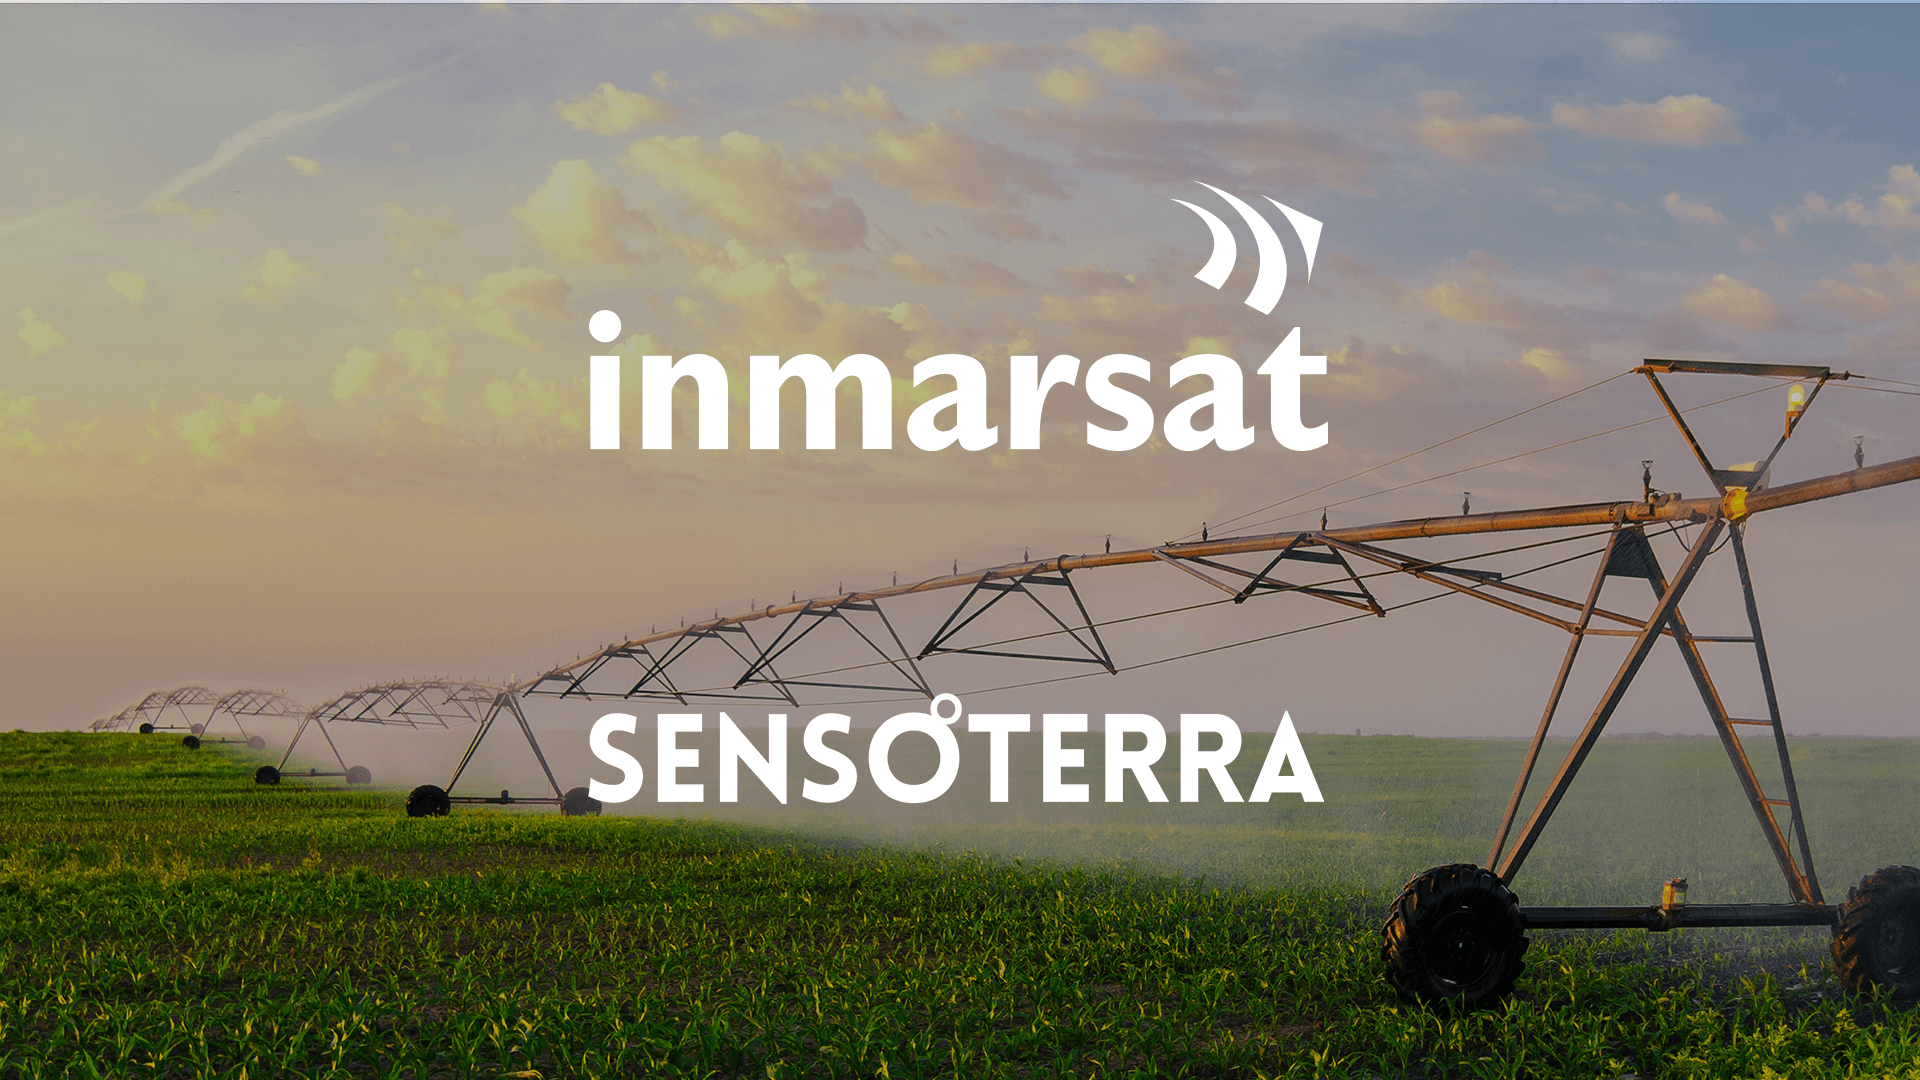 Sensoterra joins Inmarsat’s Application & Solution Provider program